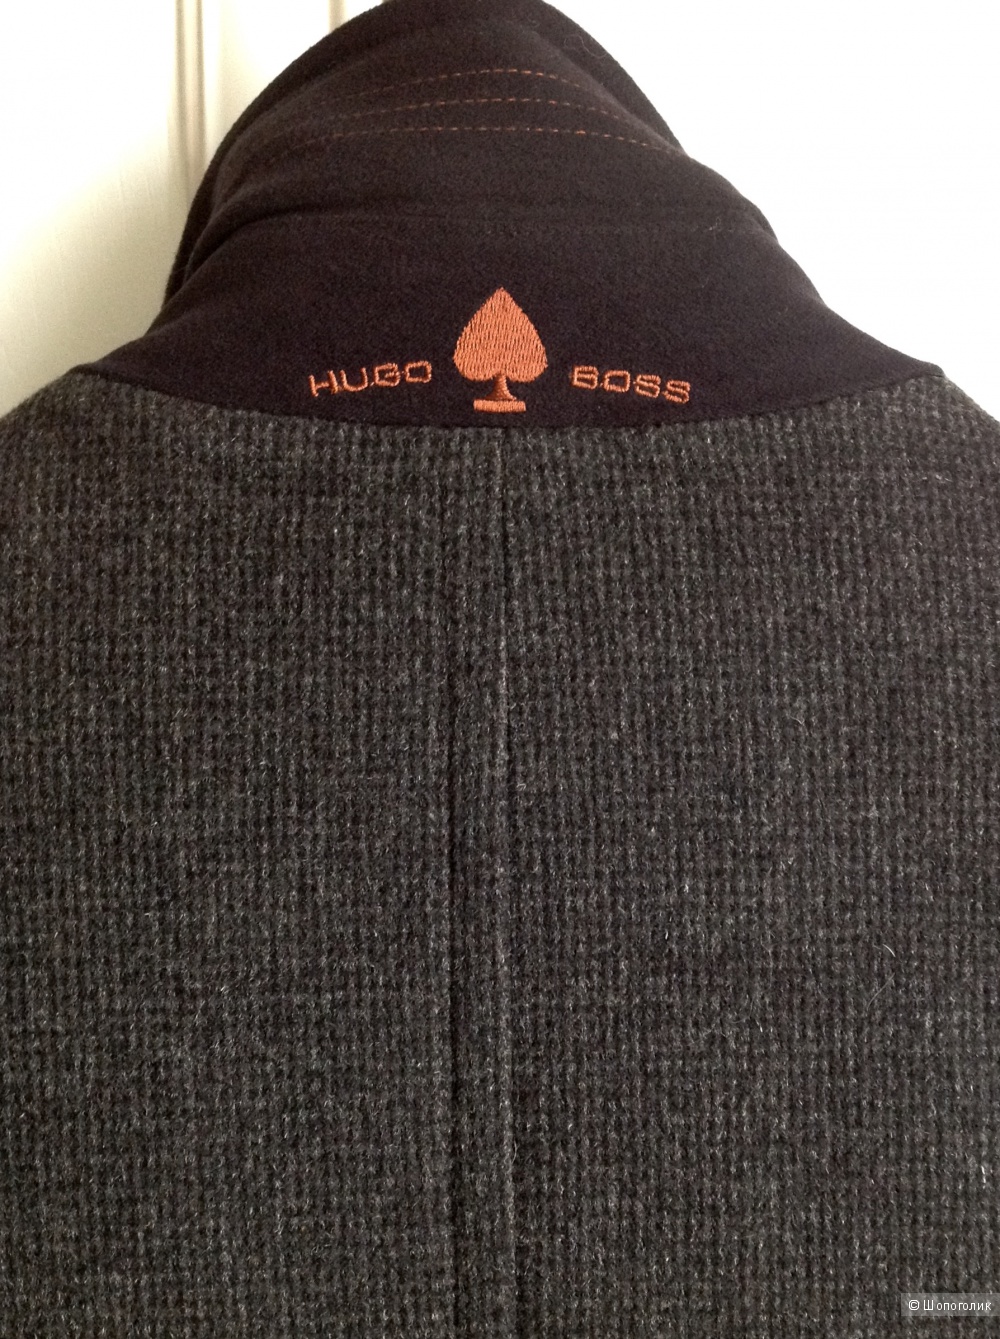 Мужское пальто Hugo Boss, размер 52.